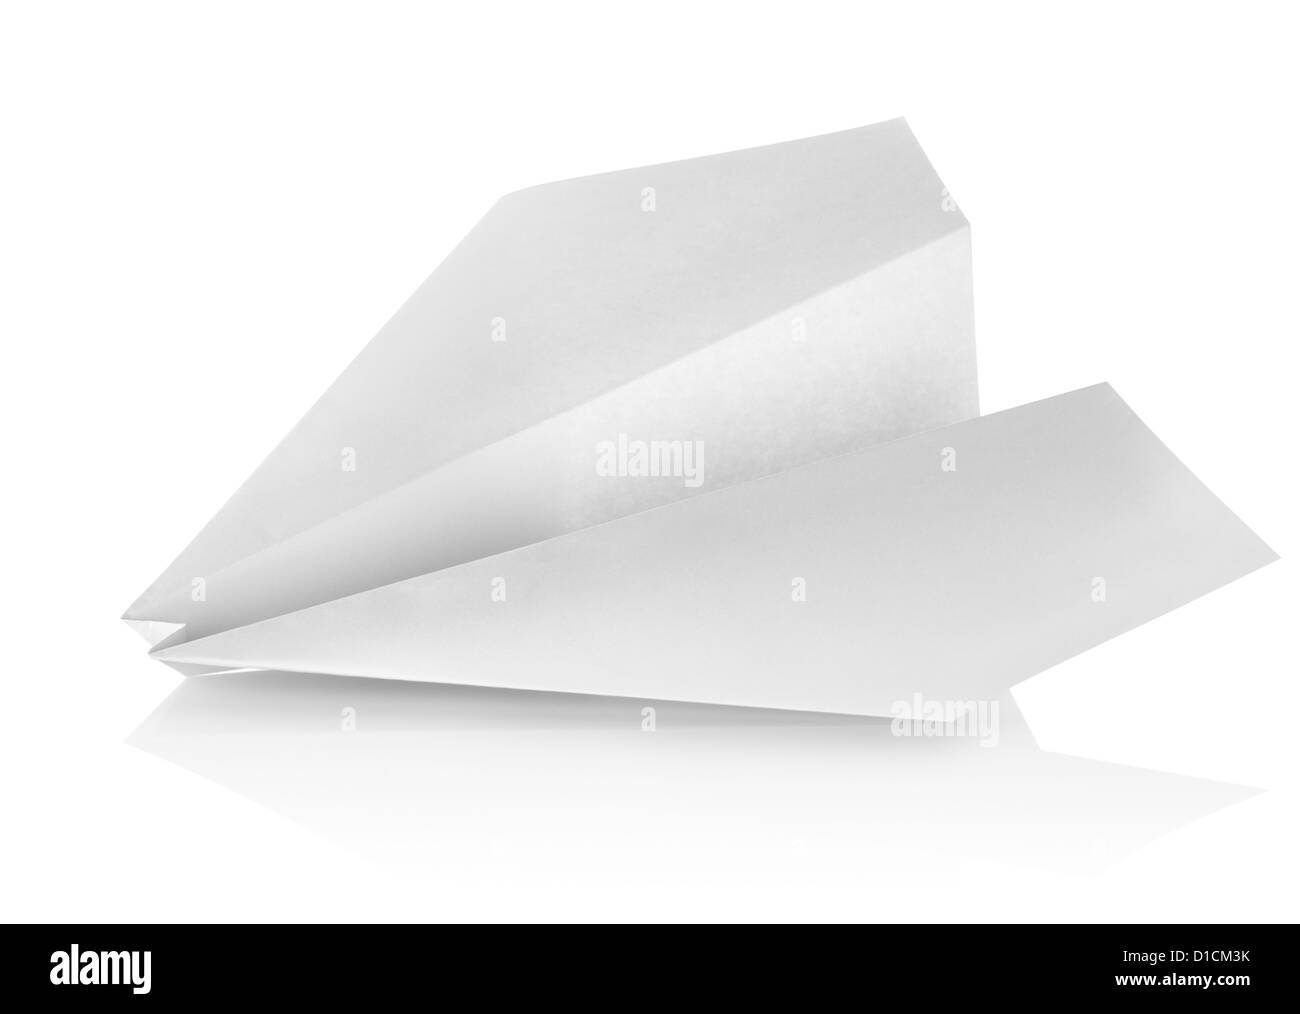 Aeroplano di carta isolato su uno sfondo bianco Foto Stock